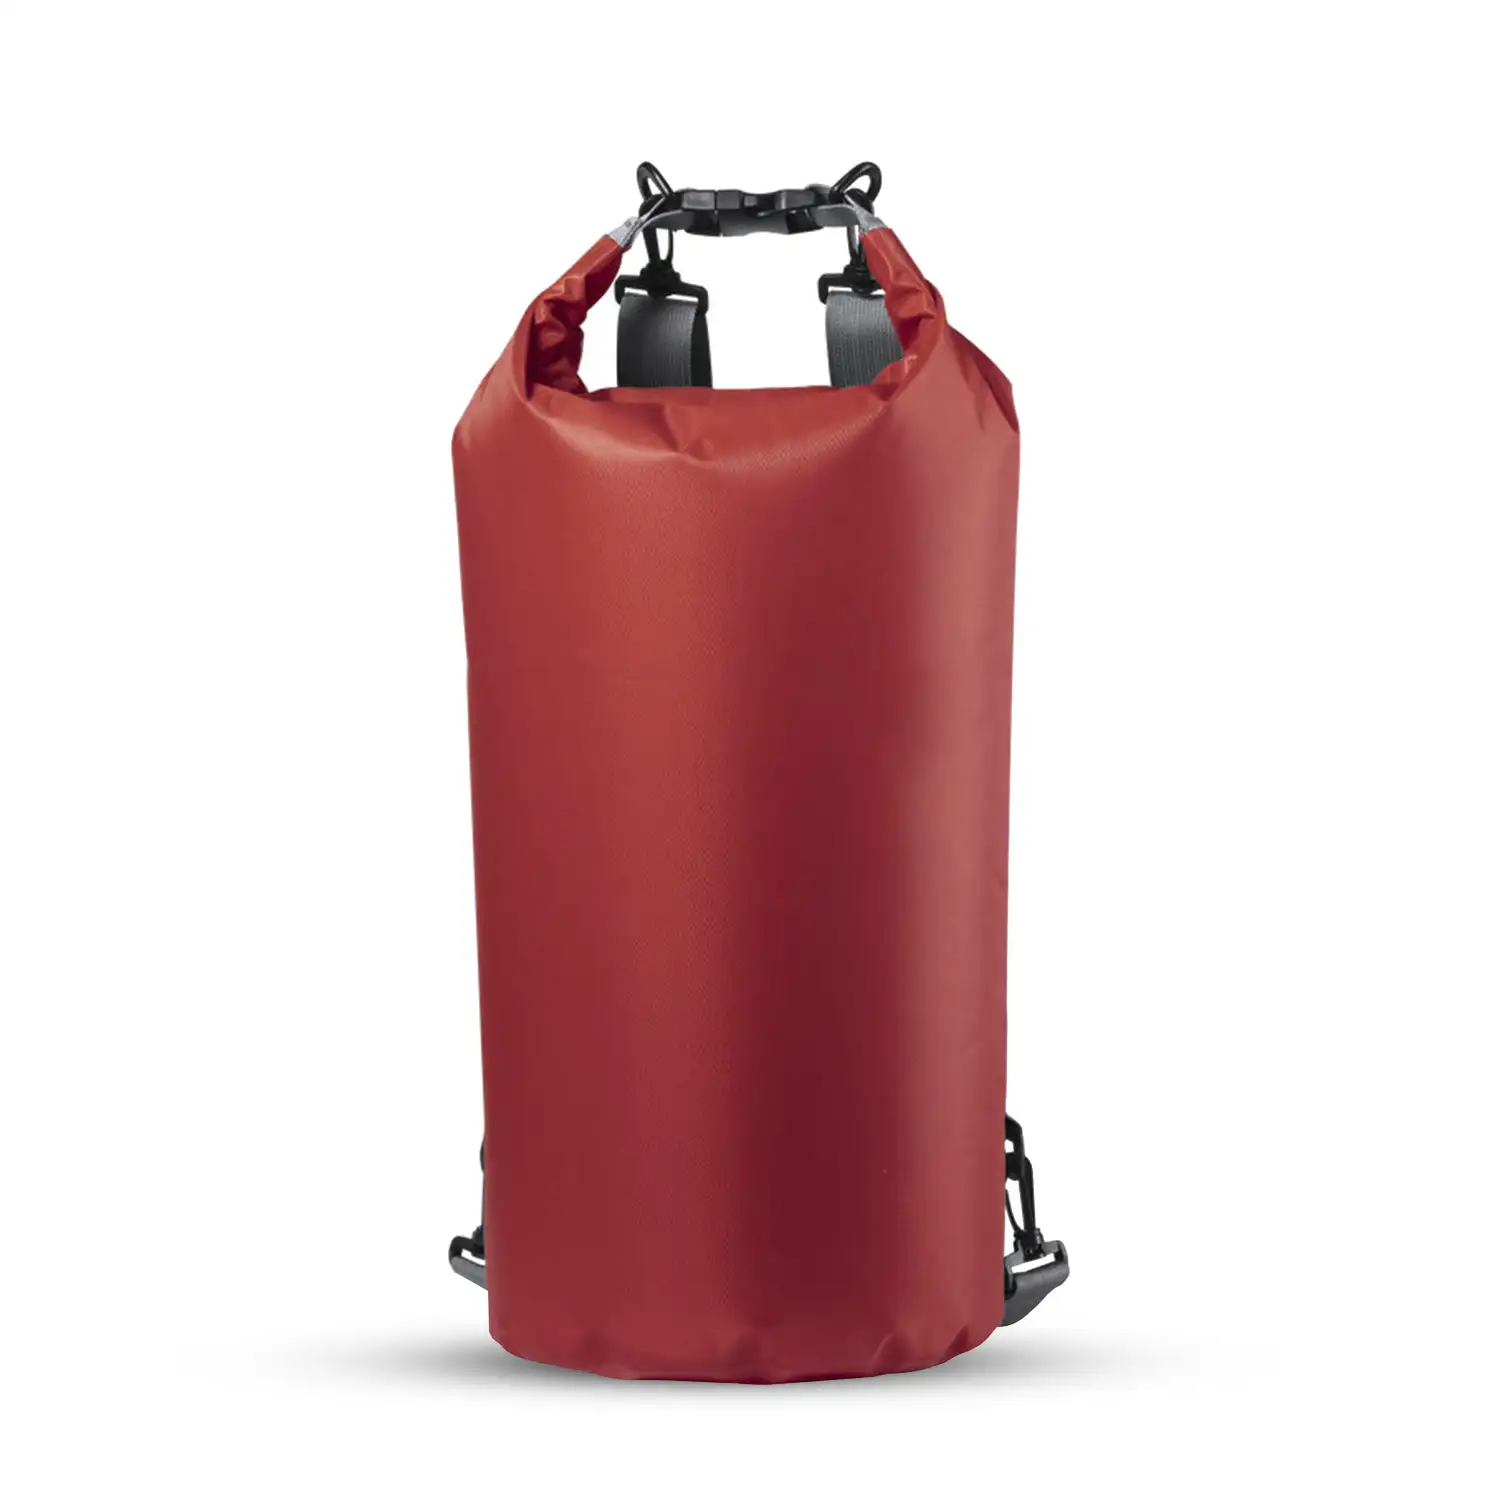 Tayrux mochila impermeable en suave y resistente Ripstop con cierre estanco de seguridad. 20 litros de capacidad.